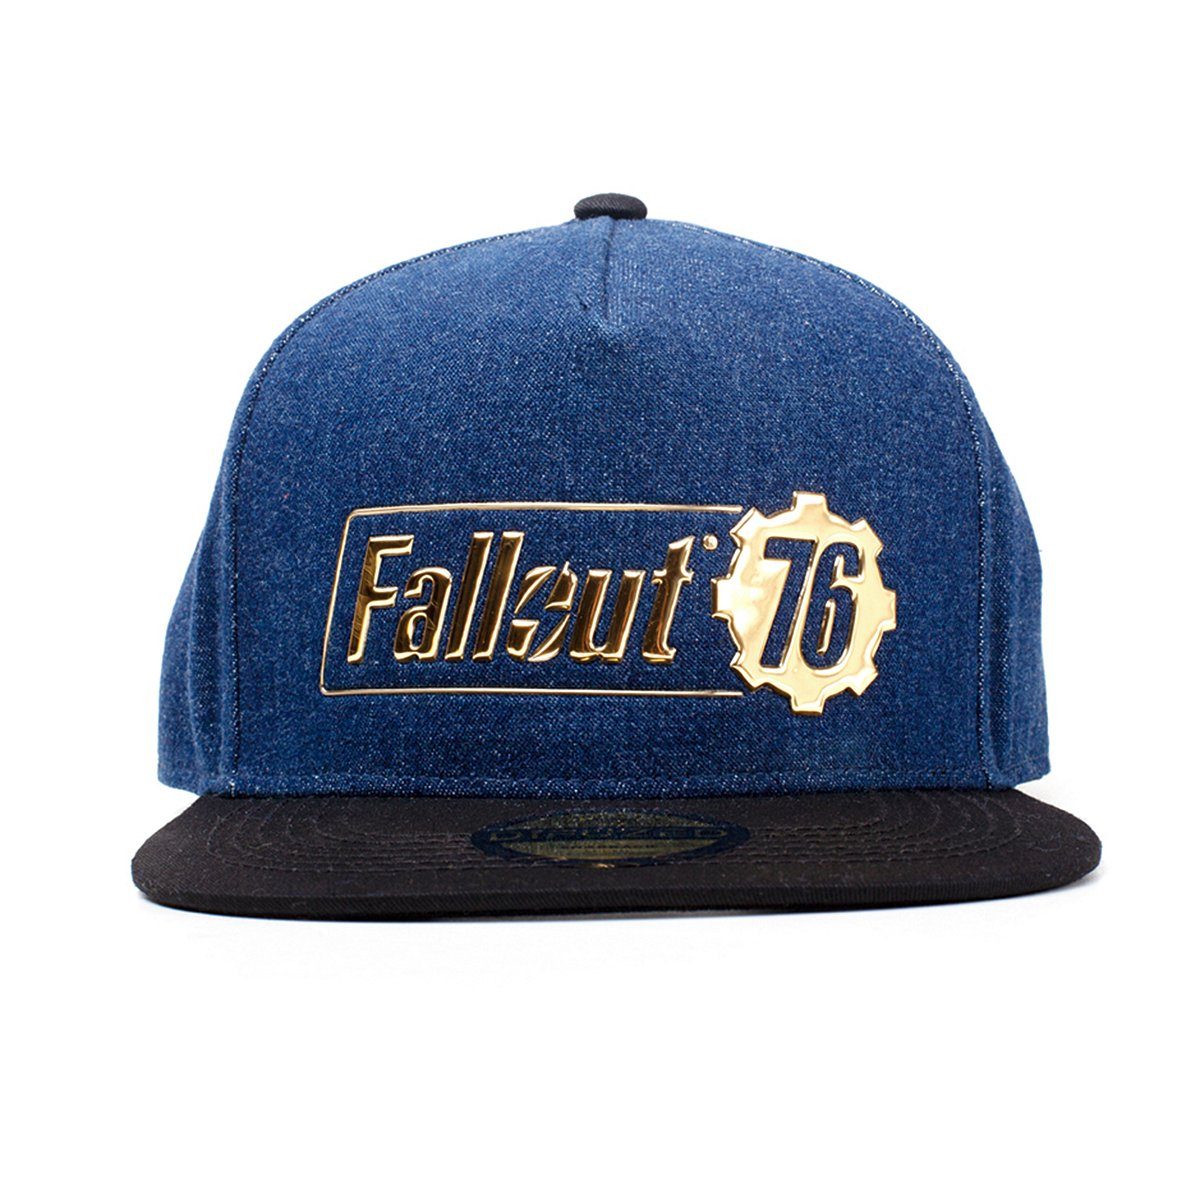 beliebter Saal DIFUZED Flat Cap Snapback Cap Logo 76 Fallout